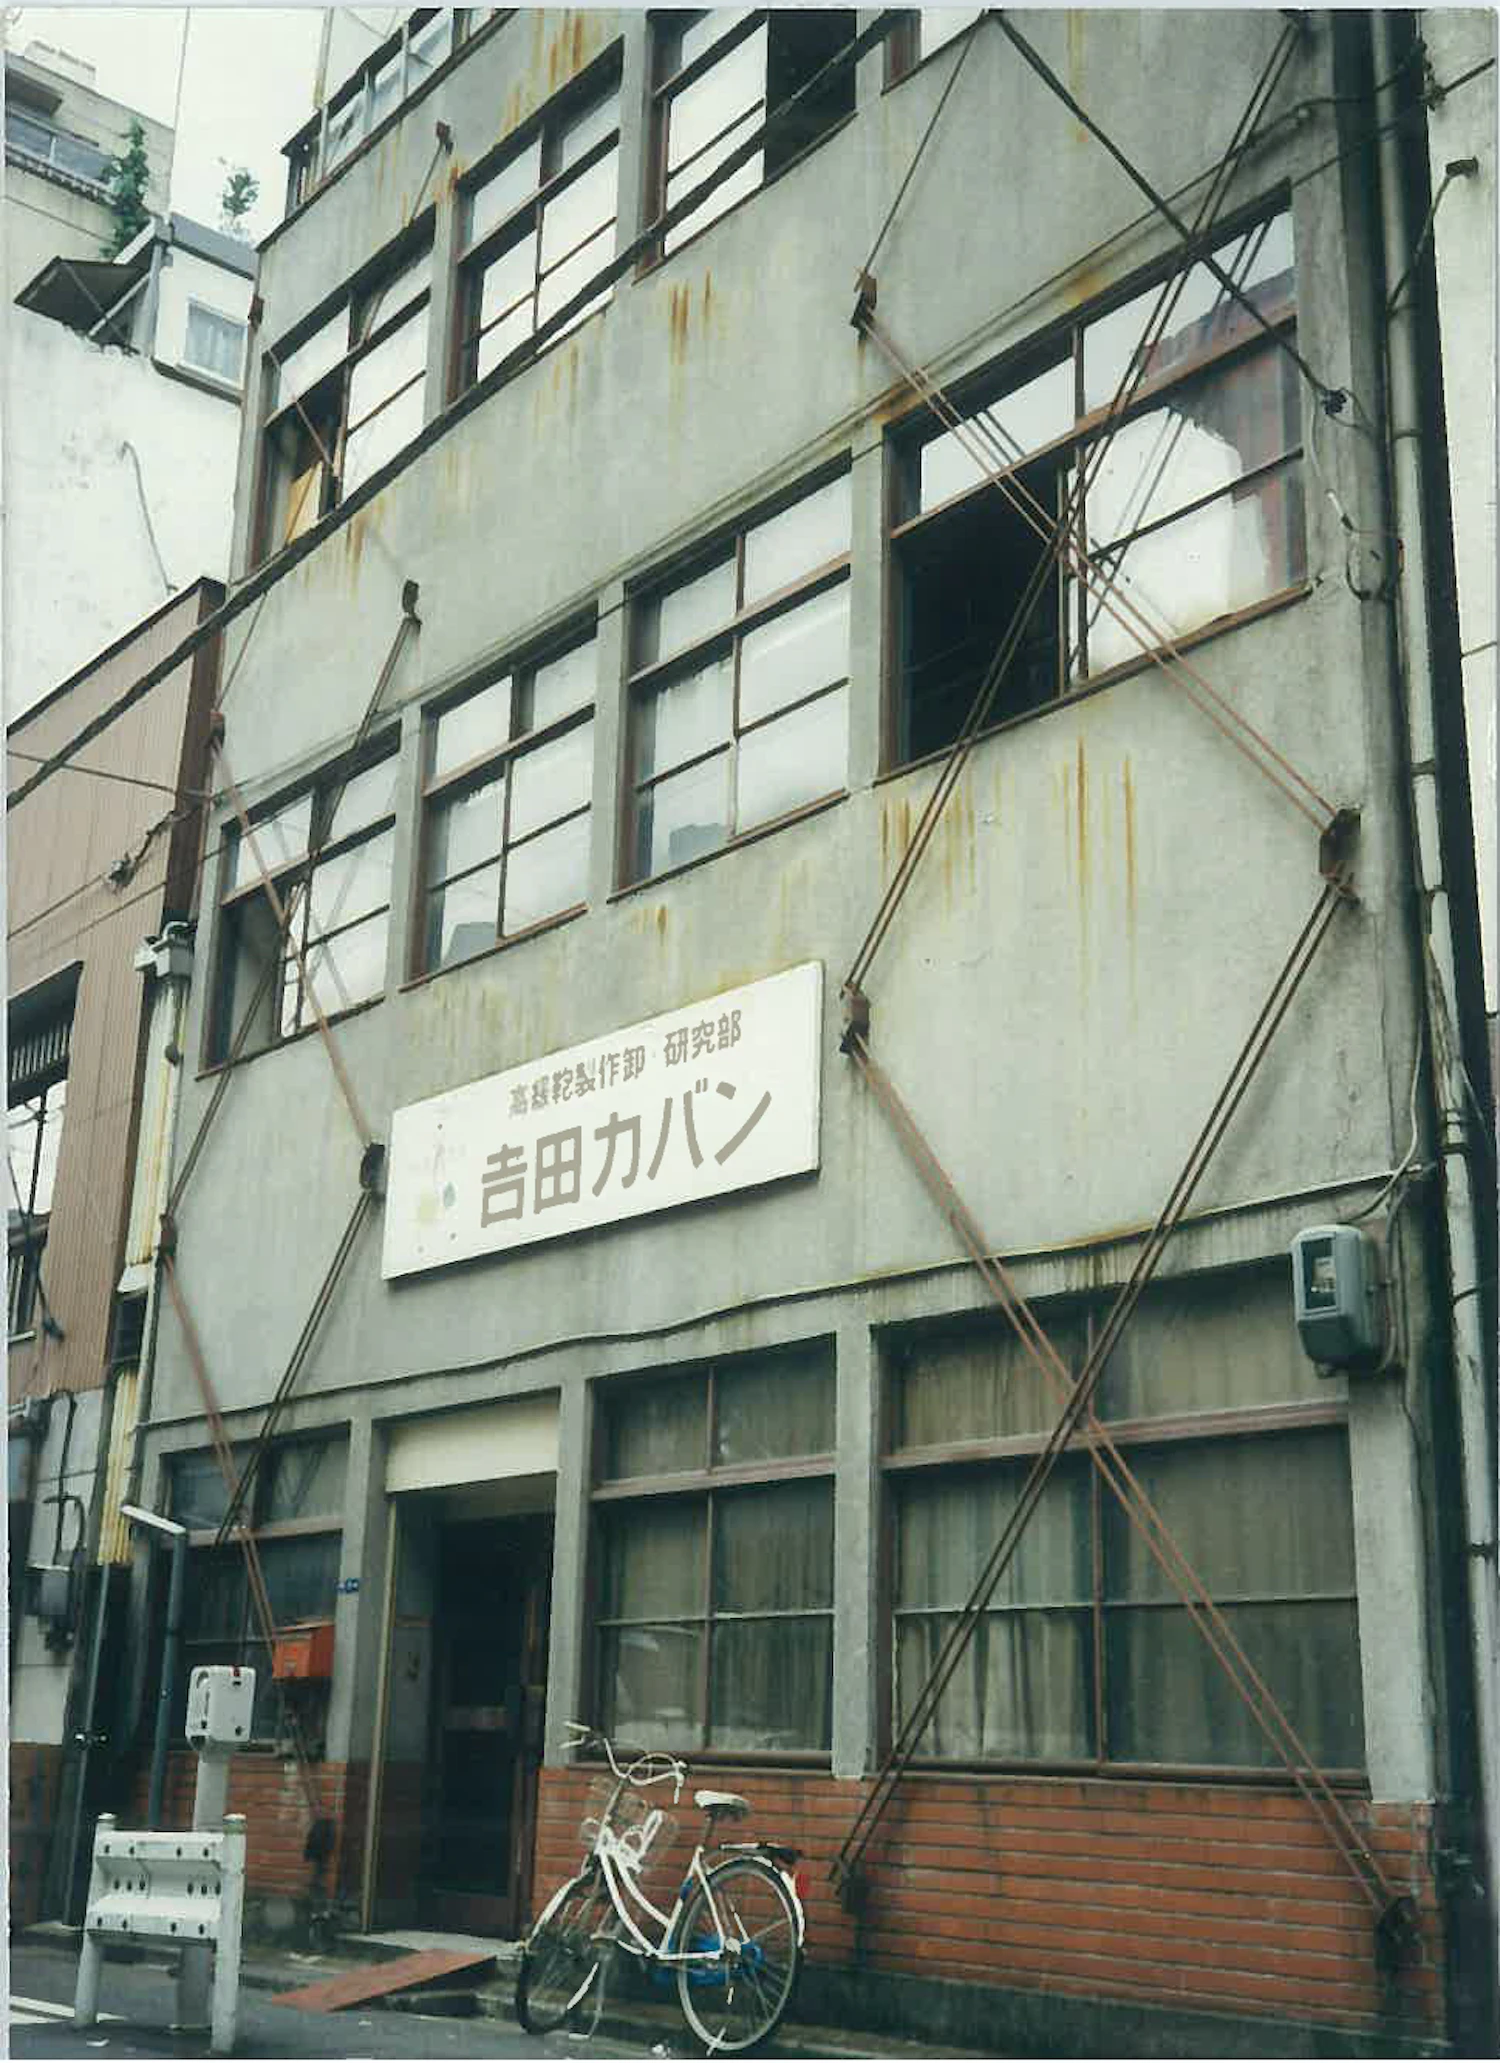 𠮷田吉蔵は1935年に東京神田須田町に「𠮷田鞄製作所」を設立。1951年には東神田へと拠点を移した。写真は東神田の旧社屋